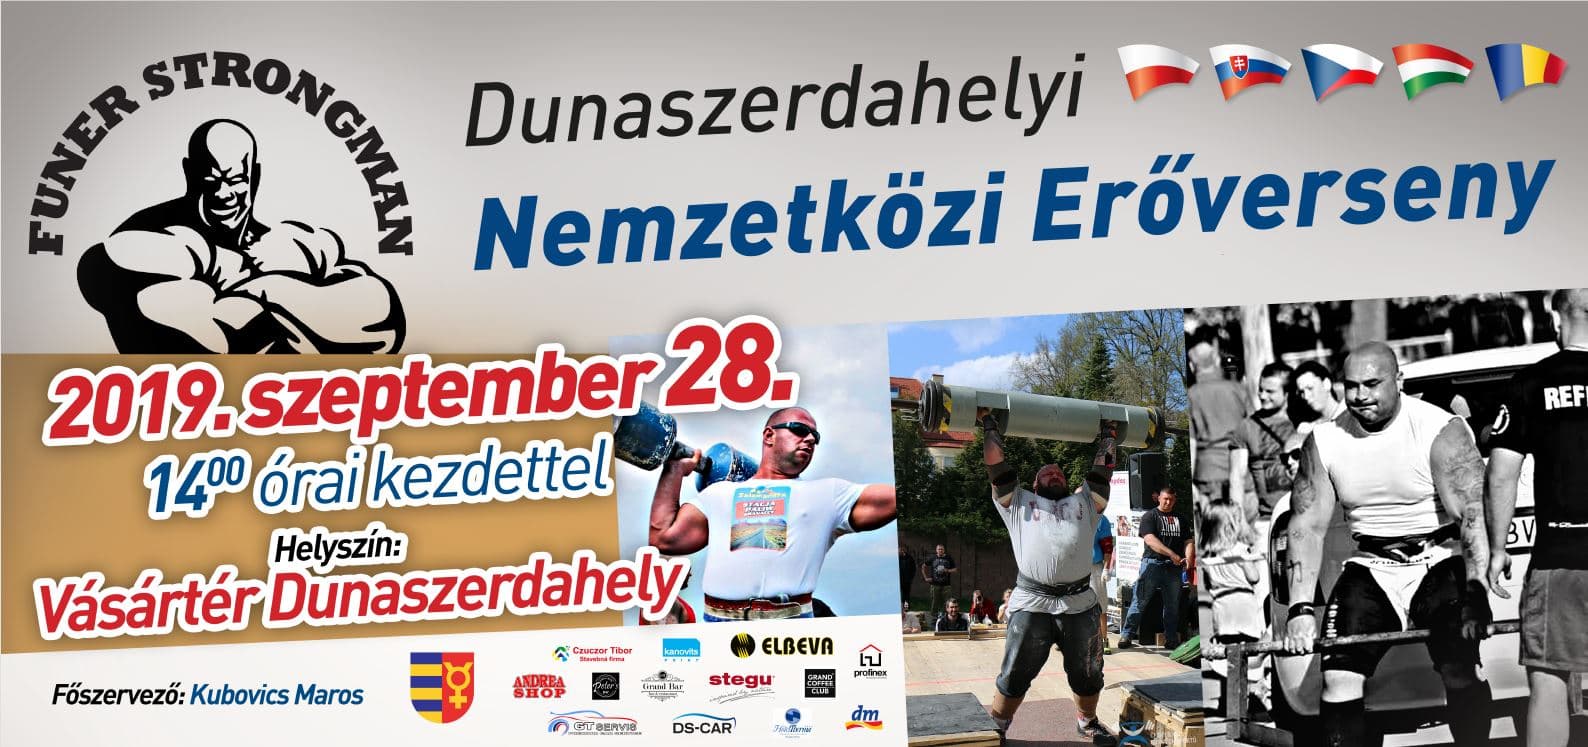 Újra nemzetközi erőverseny Dunaszerdahelyen